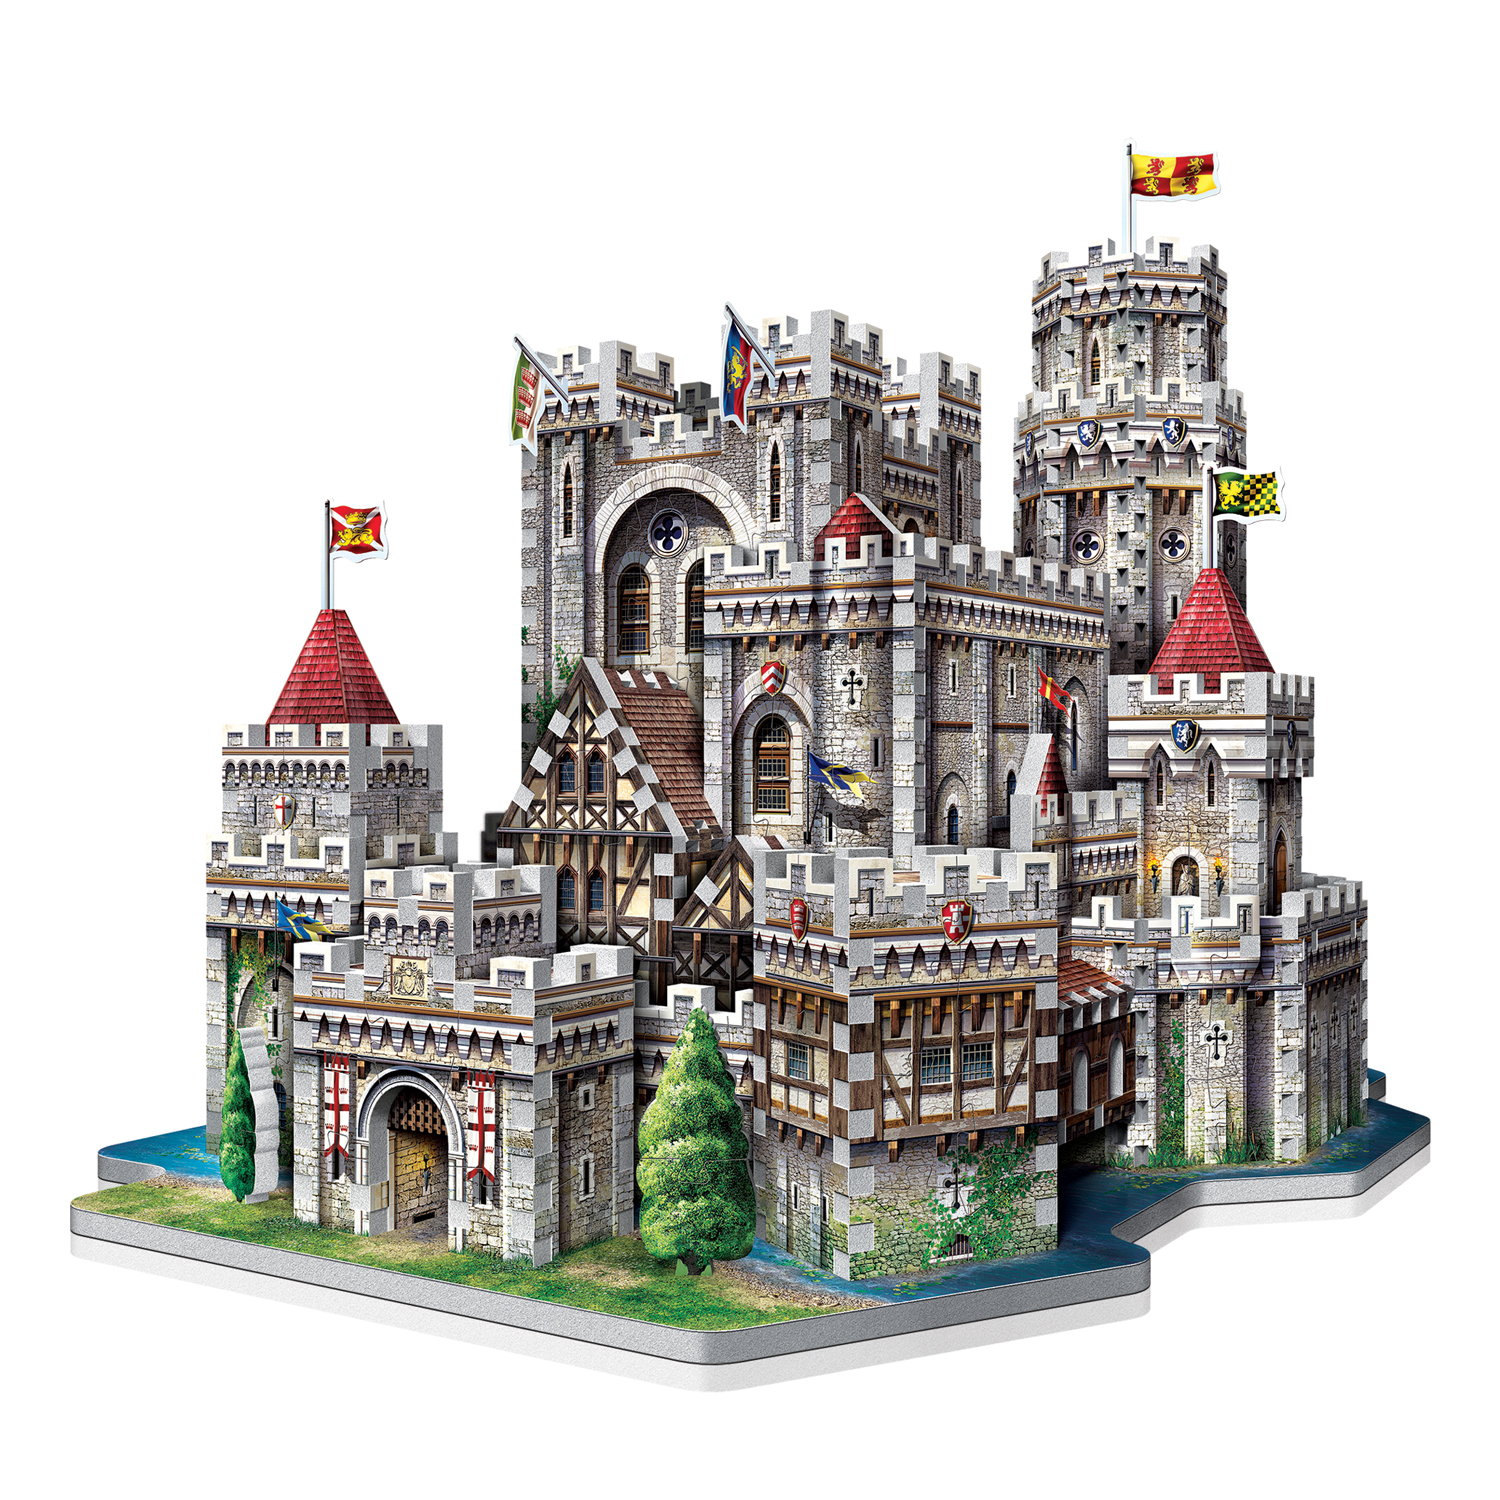 Camelot 865 Teile King Artus Castle / Burg NEU WREBBIT 3D 34546 3-D Puzzle 